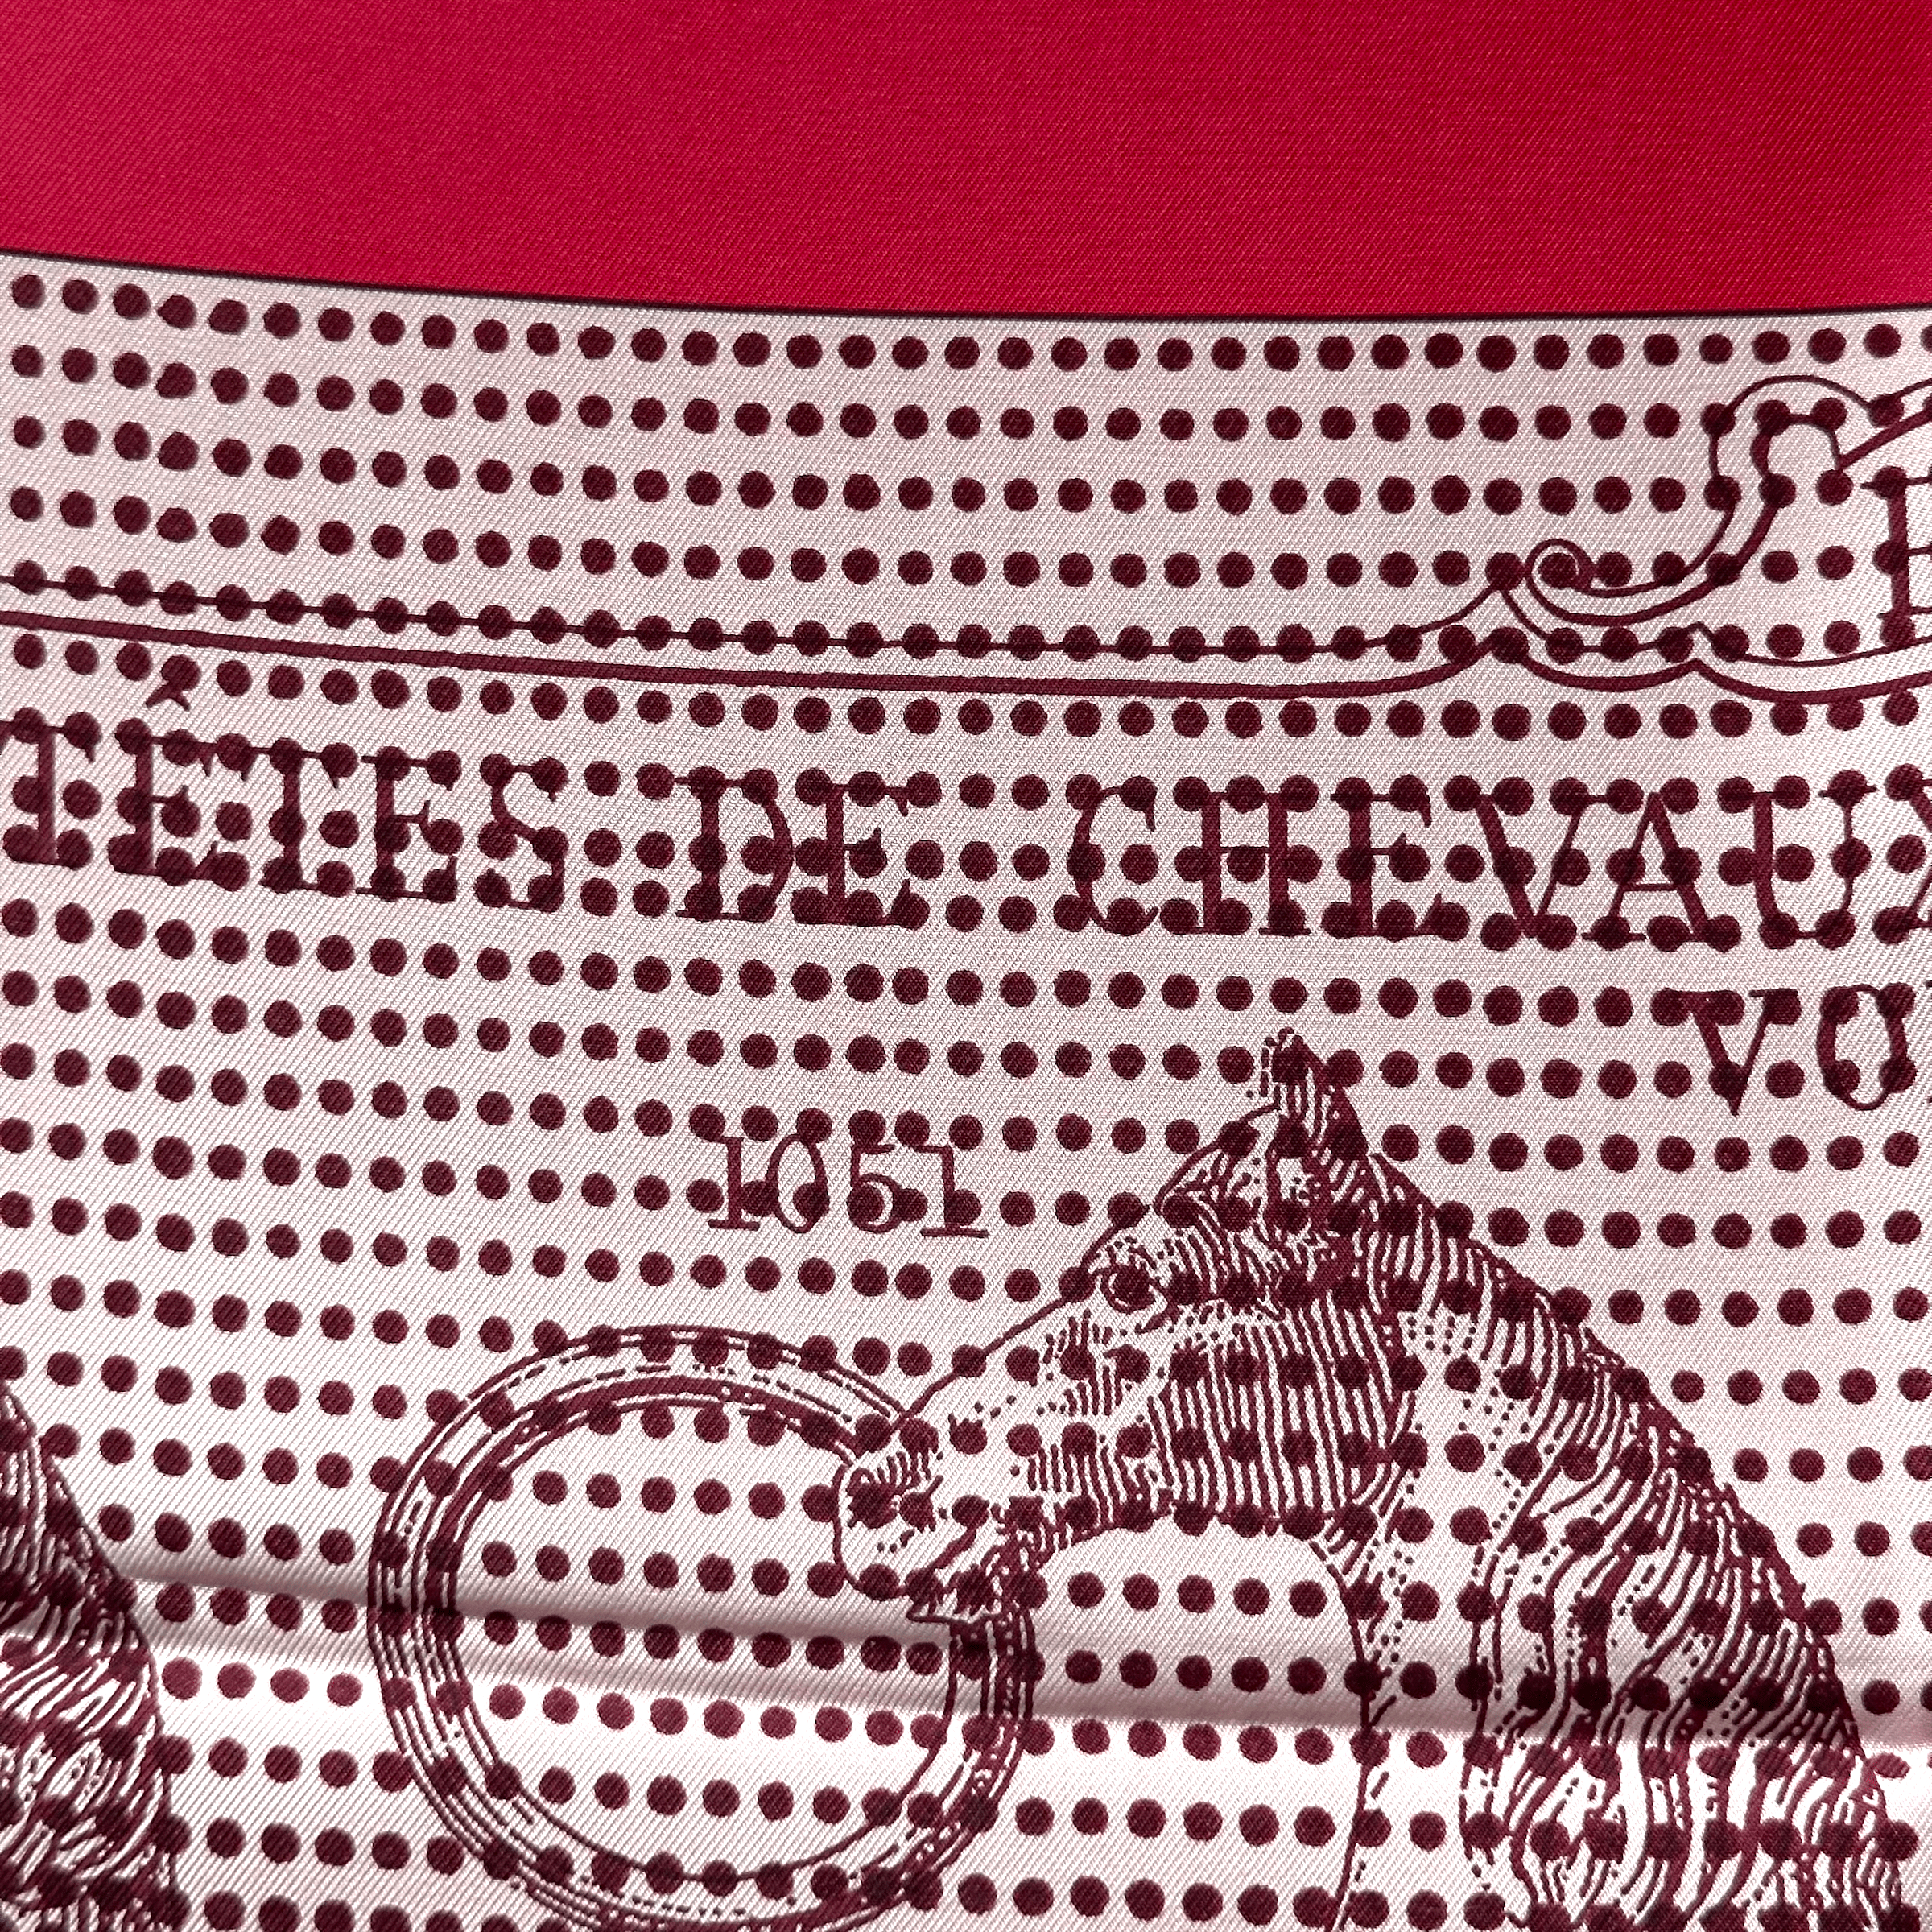 carre-foulard-hermes-manufacture-de-boucleries-detail